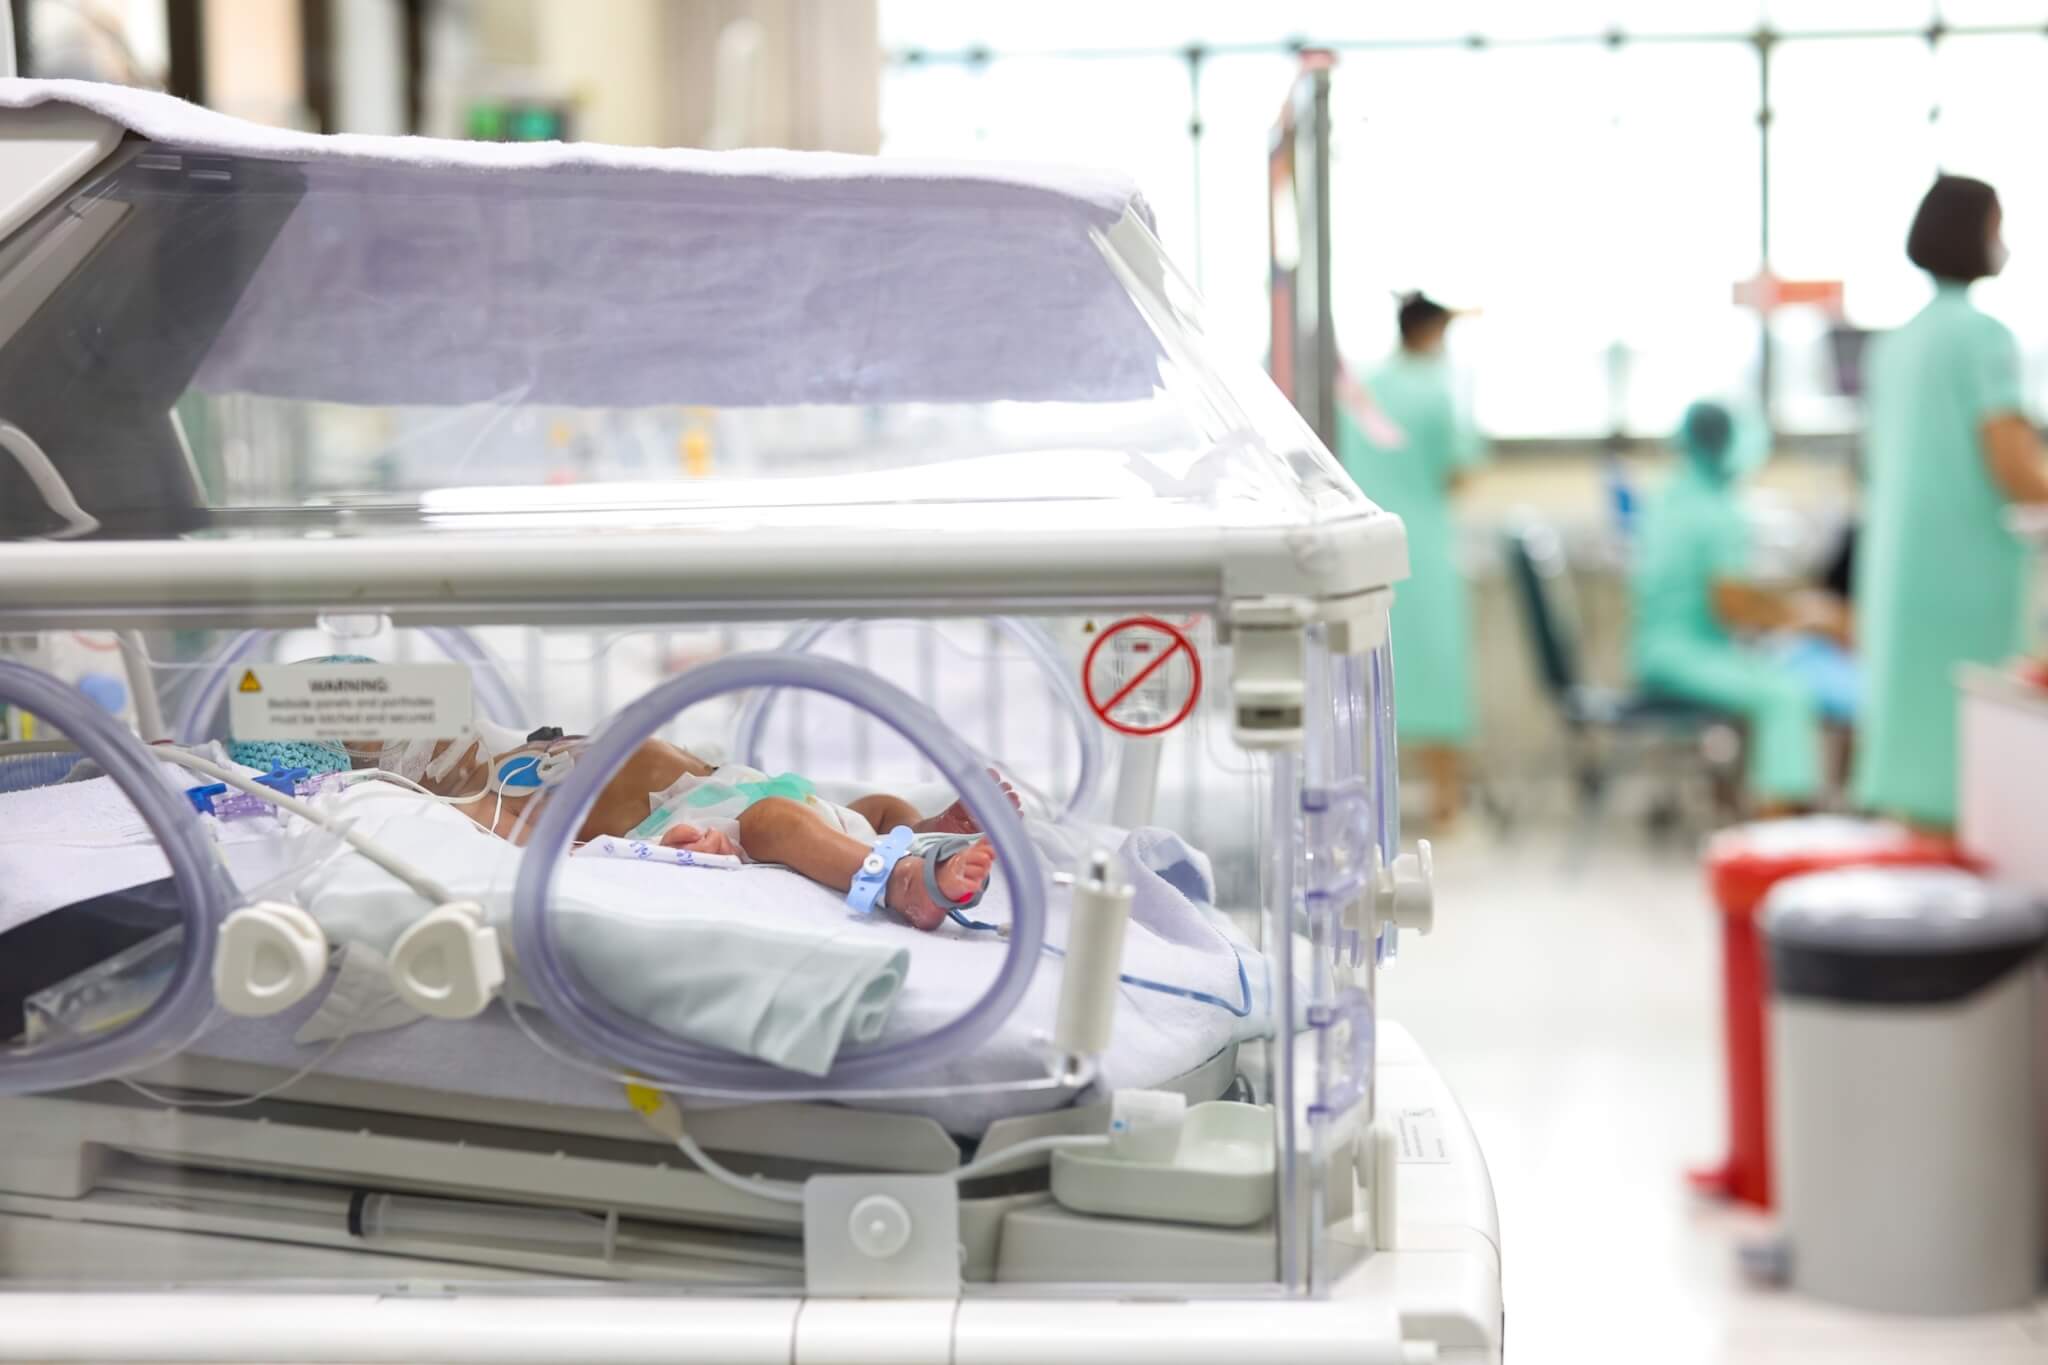 “ตู้อบ” ช่วยเหลือทารกคลอดก่อนกำหนด กองทุนอาคารเฉลิมพระเกียรติฯ มูลนิธิโรงพยาบาลเด็ก